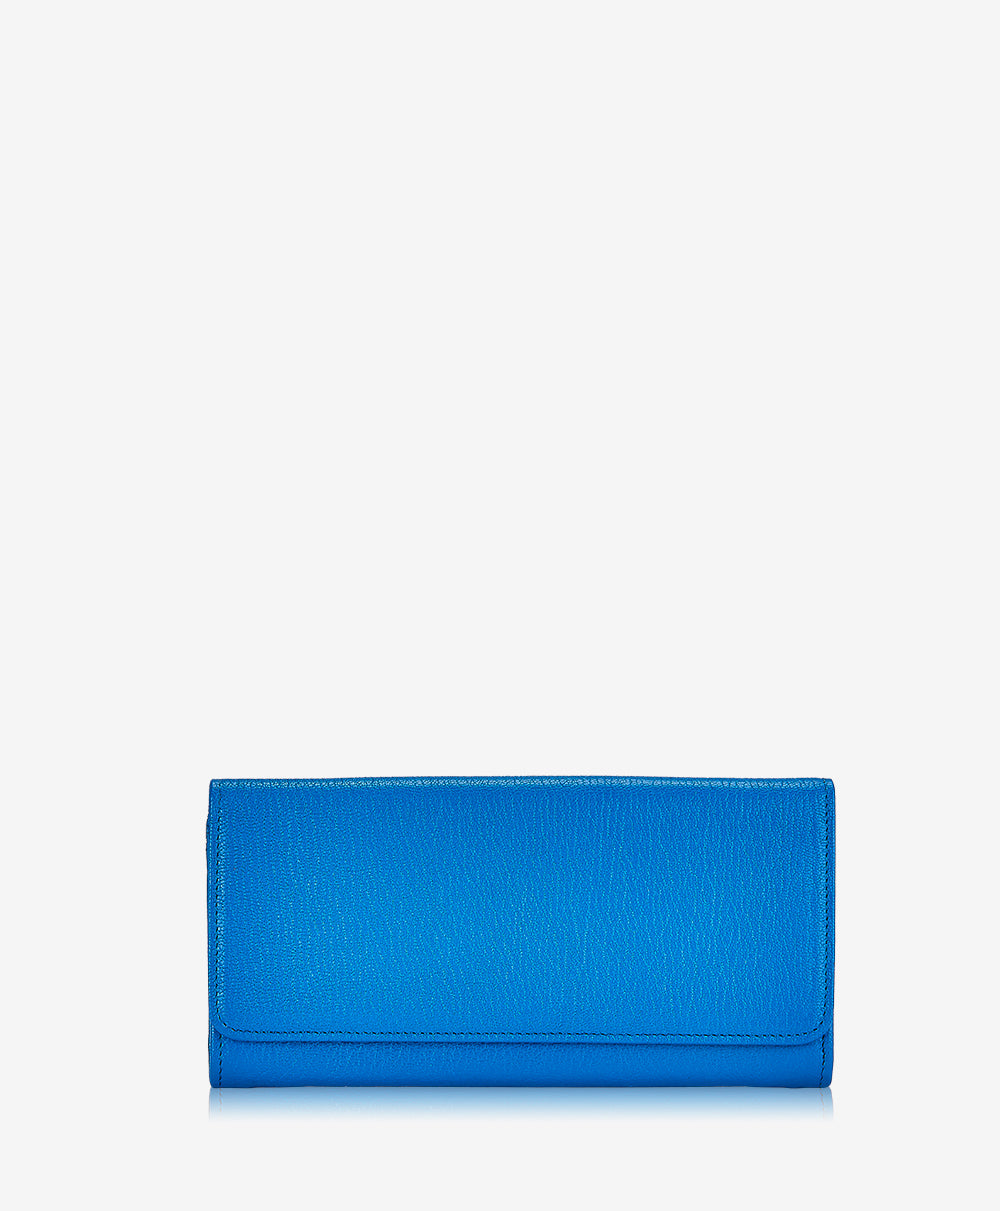 GiGi New York Large Fold-Over Wallet Martime Blue Goatskin